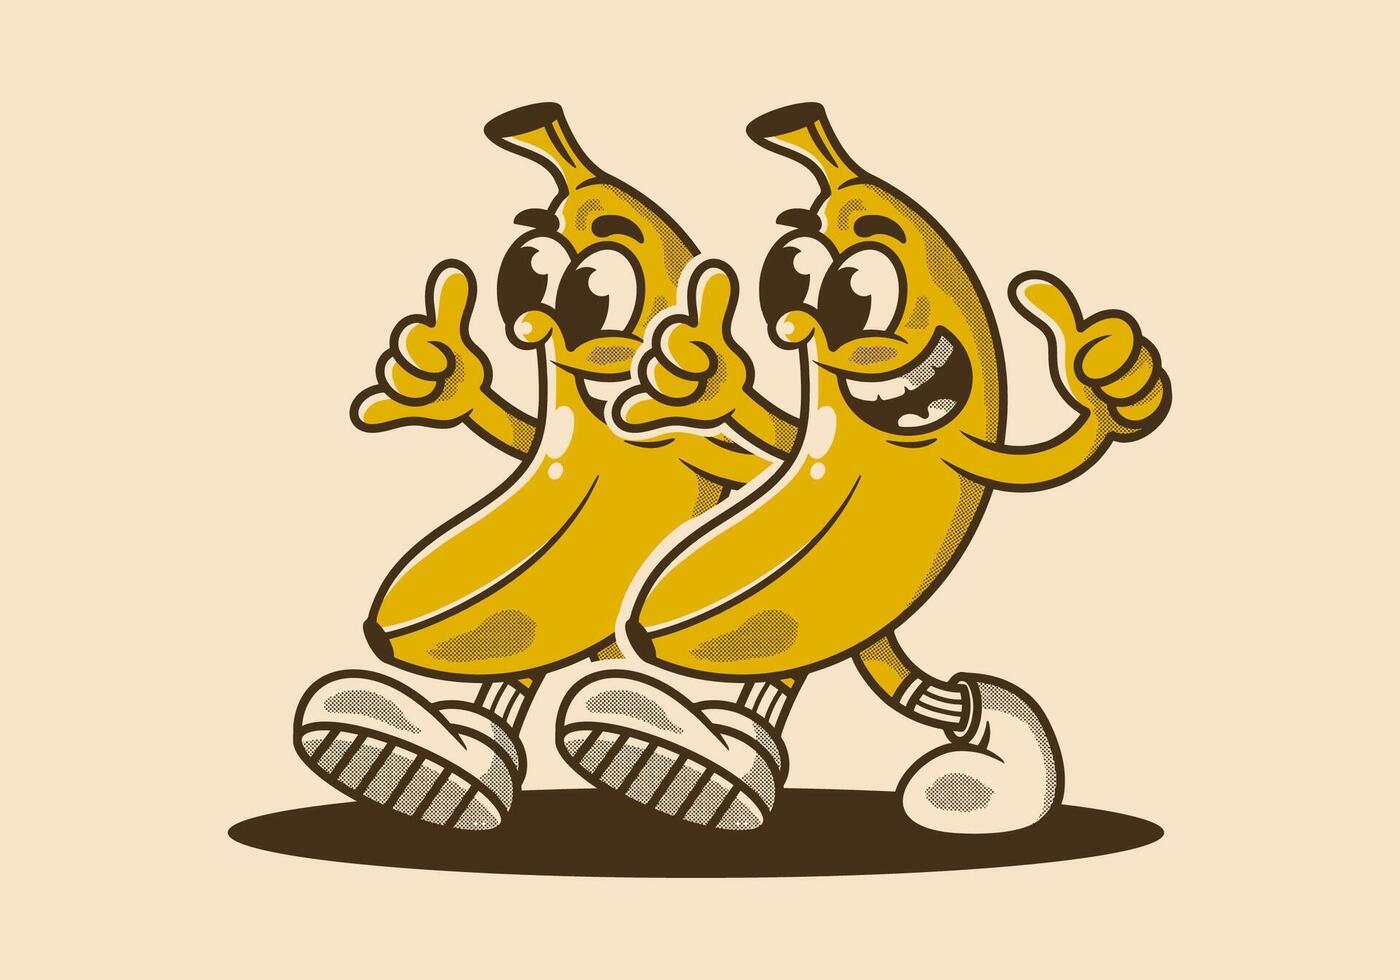 Mascot character illustration of walking banana vector